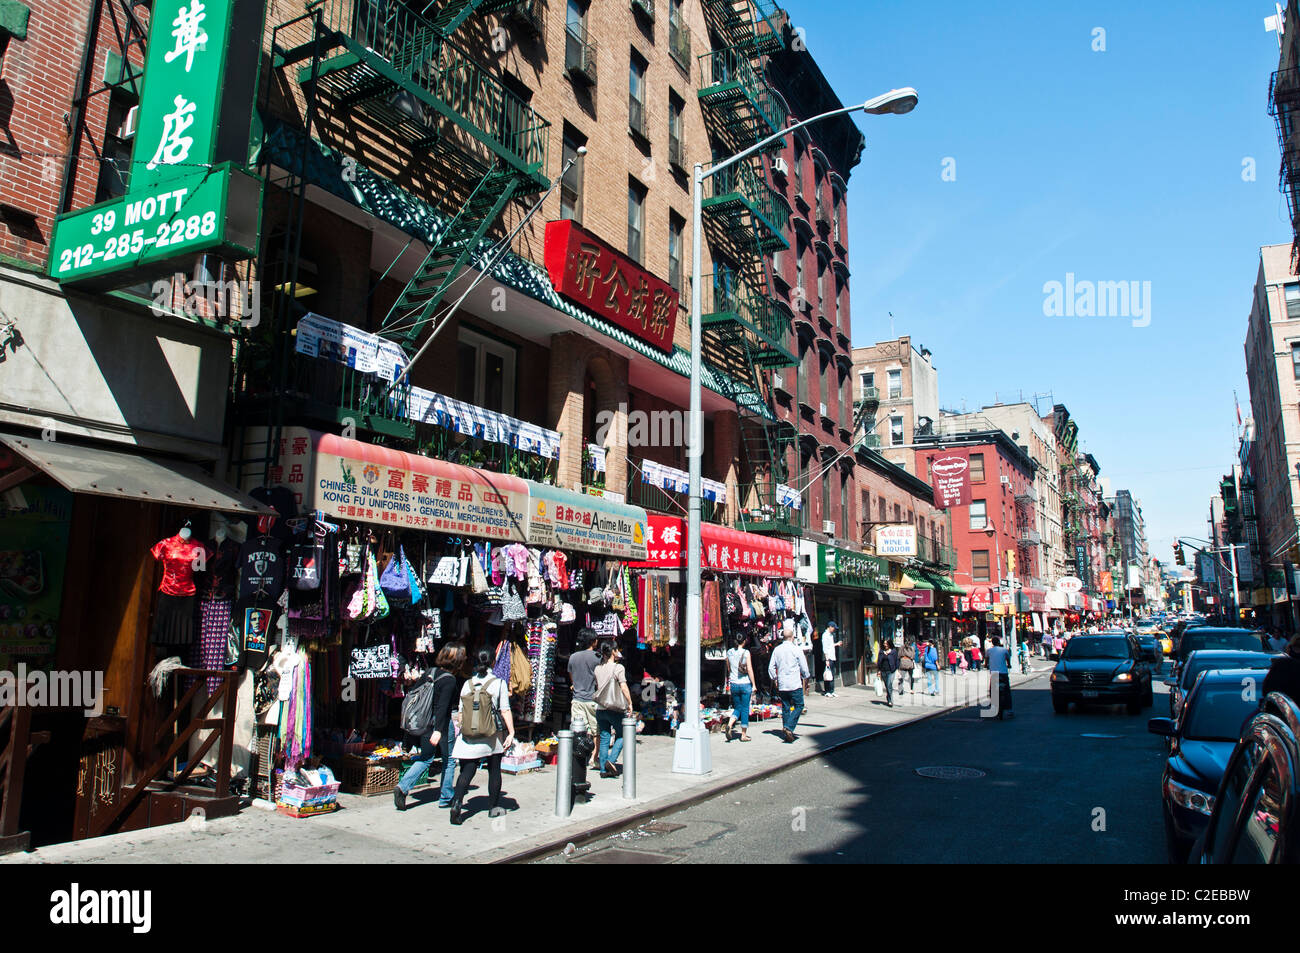 Rue animée de boutiques et de l'écriture chinoise signes, Chinatown, Manhattan, New York City, USA Banque D'Images